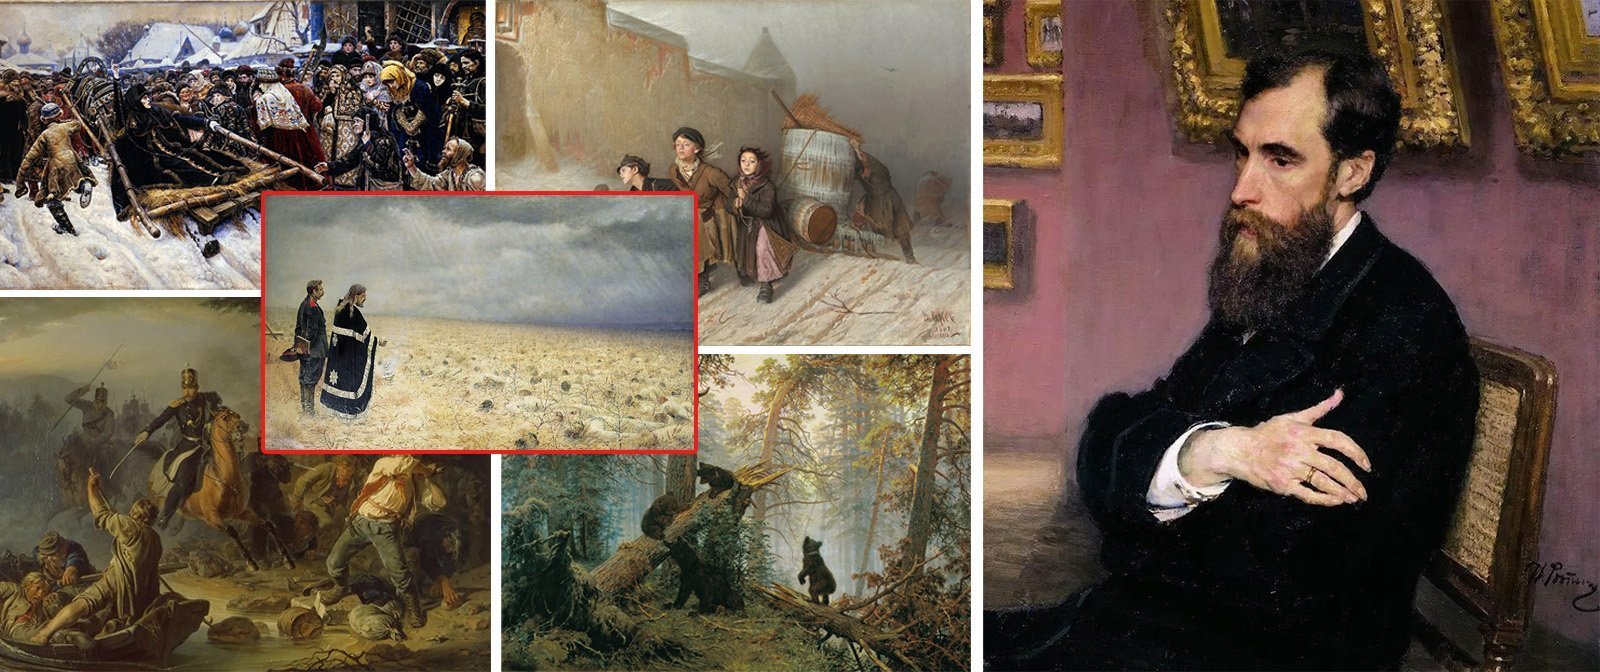 Зачем Павел Третьяков коллекционировал картины? Его главный жизненный принцип, дающий ответ на этот вопрос. 